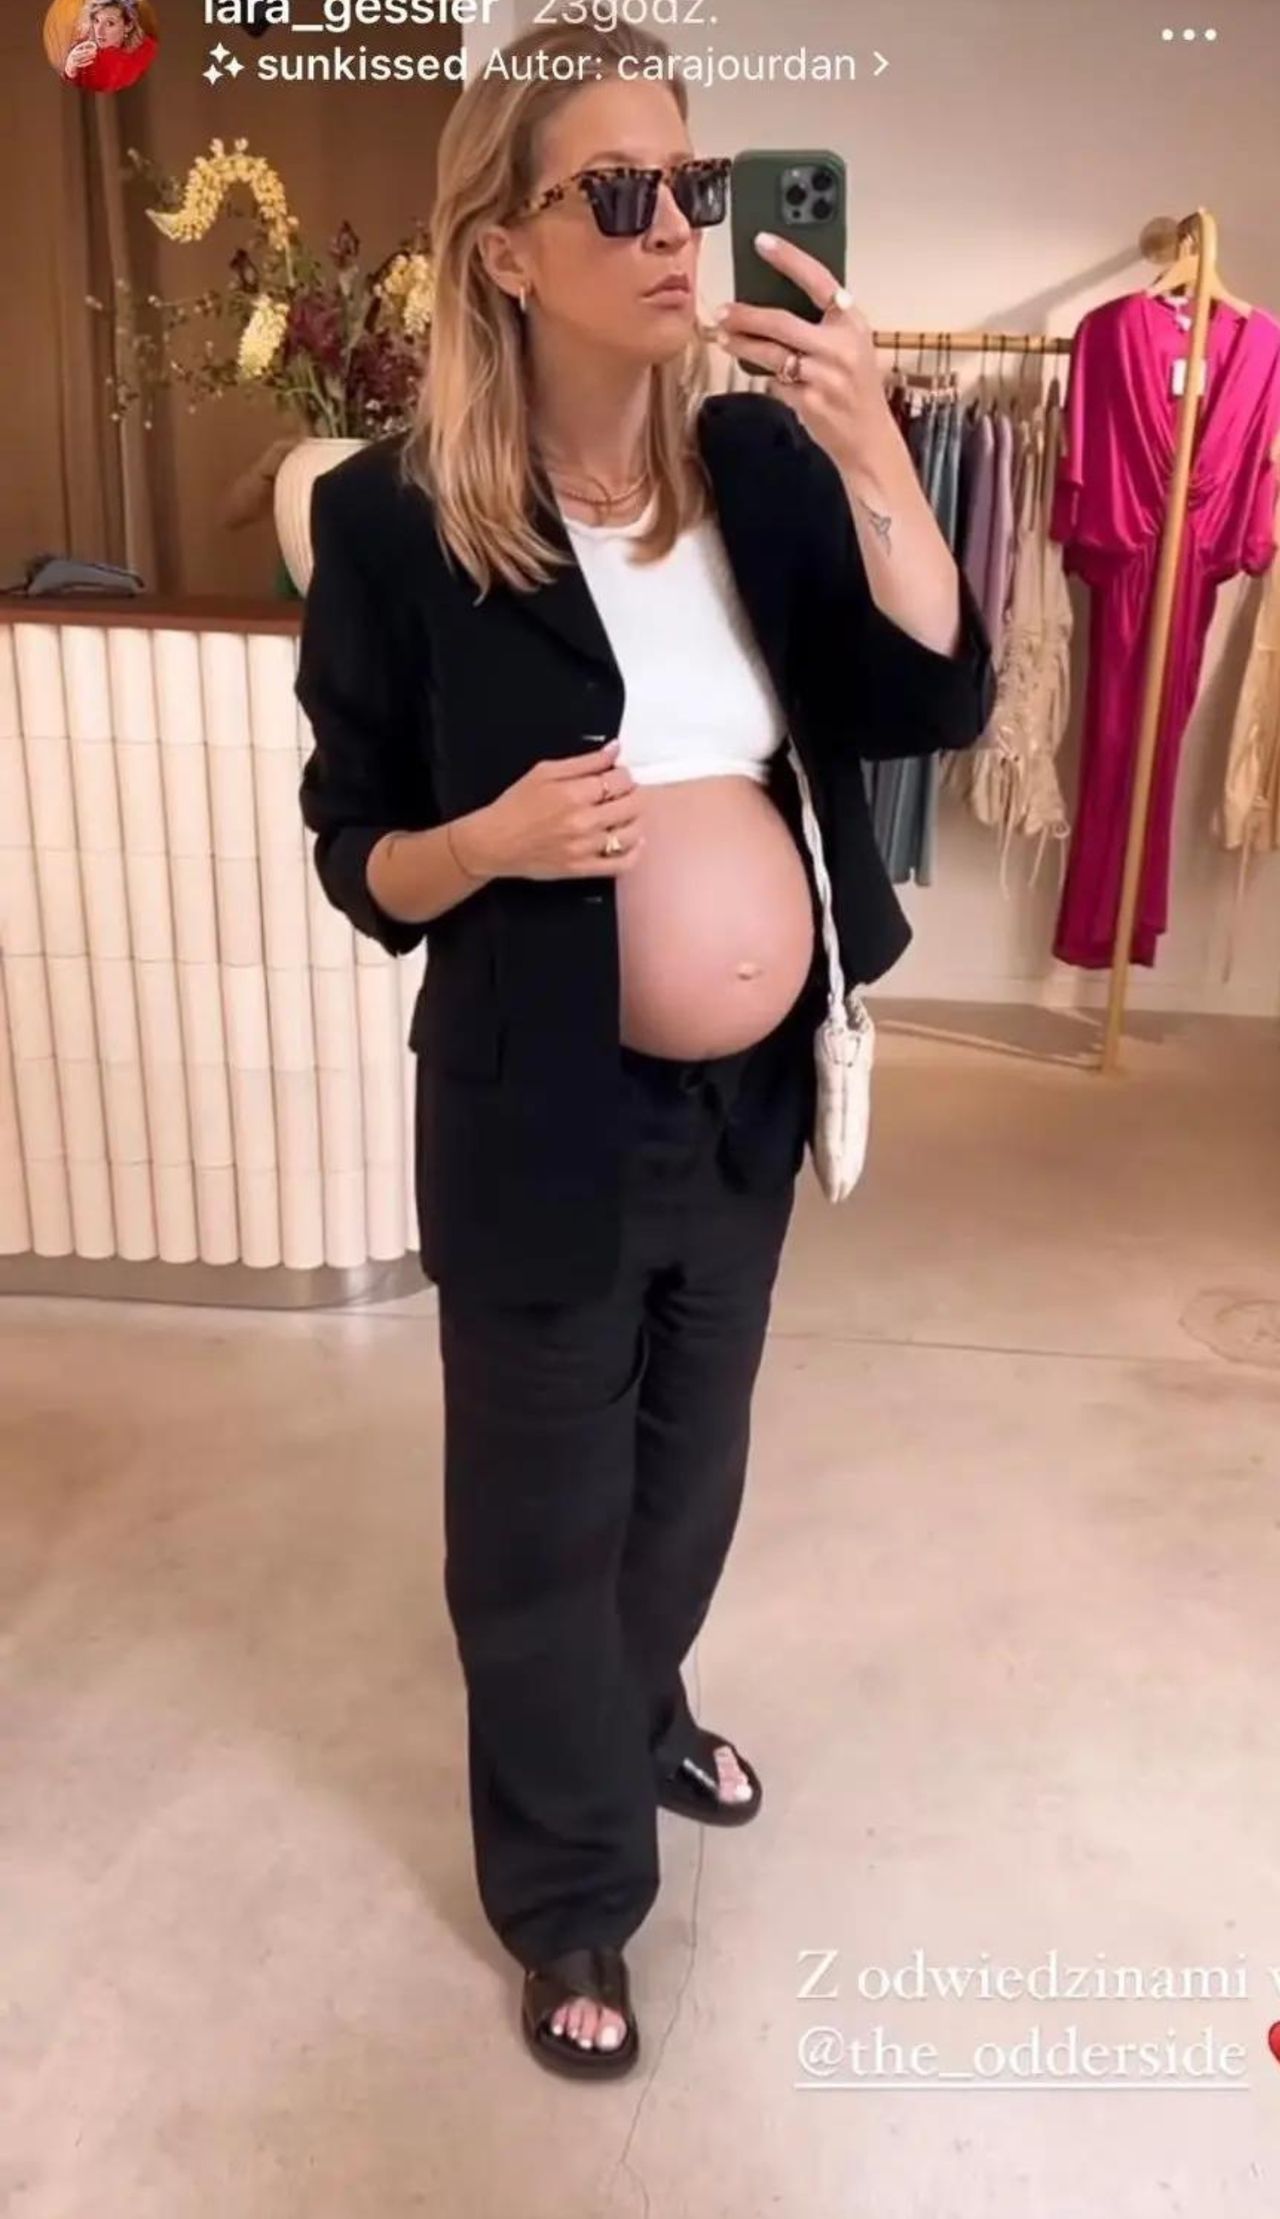 Lara Gessler pochwaliła się ciążowym brzuszkiem 